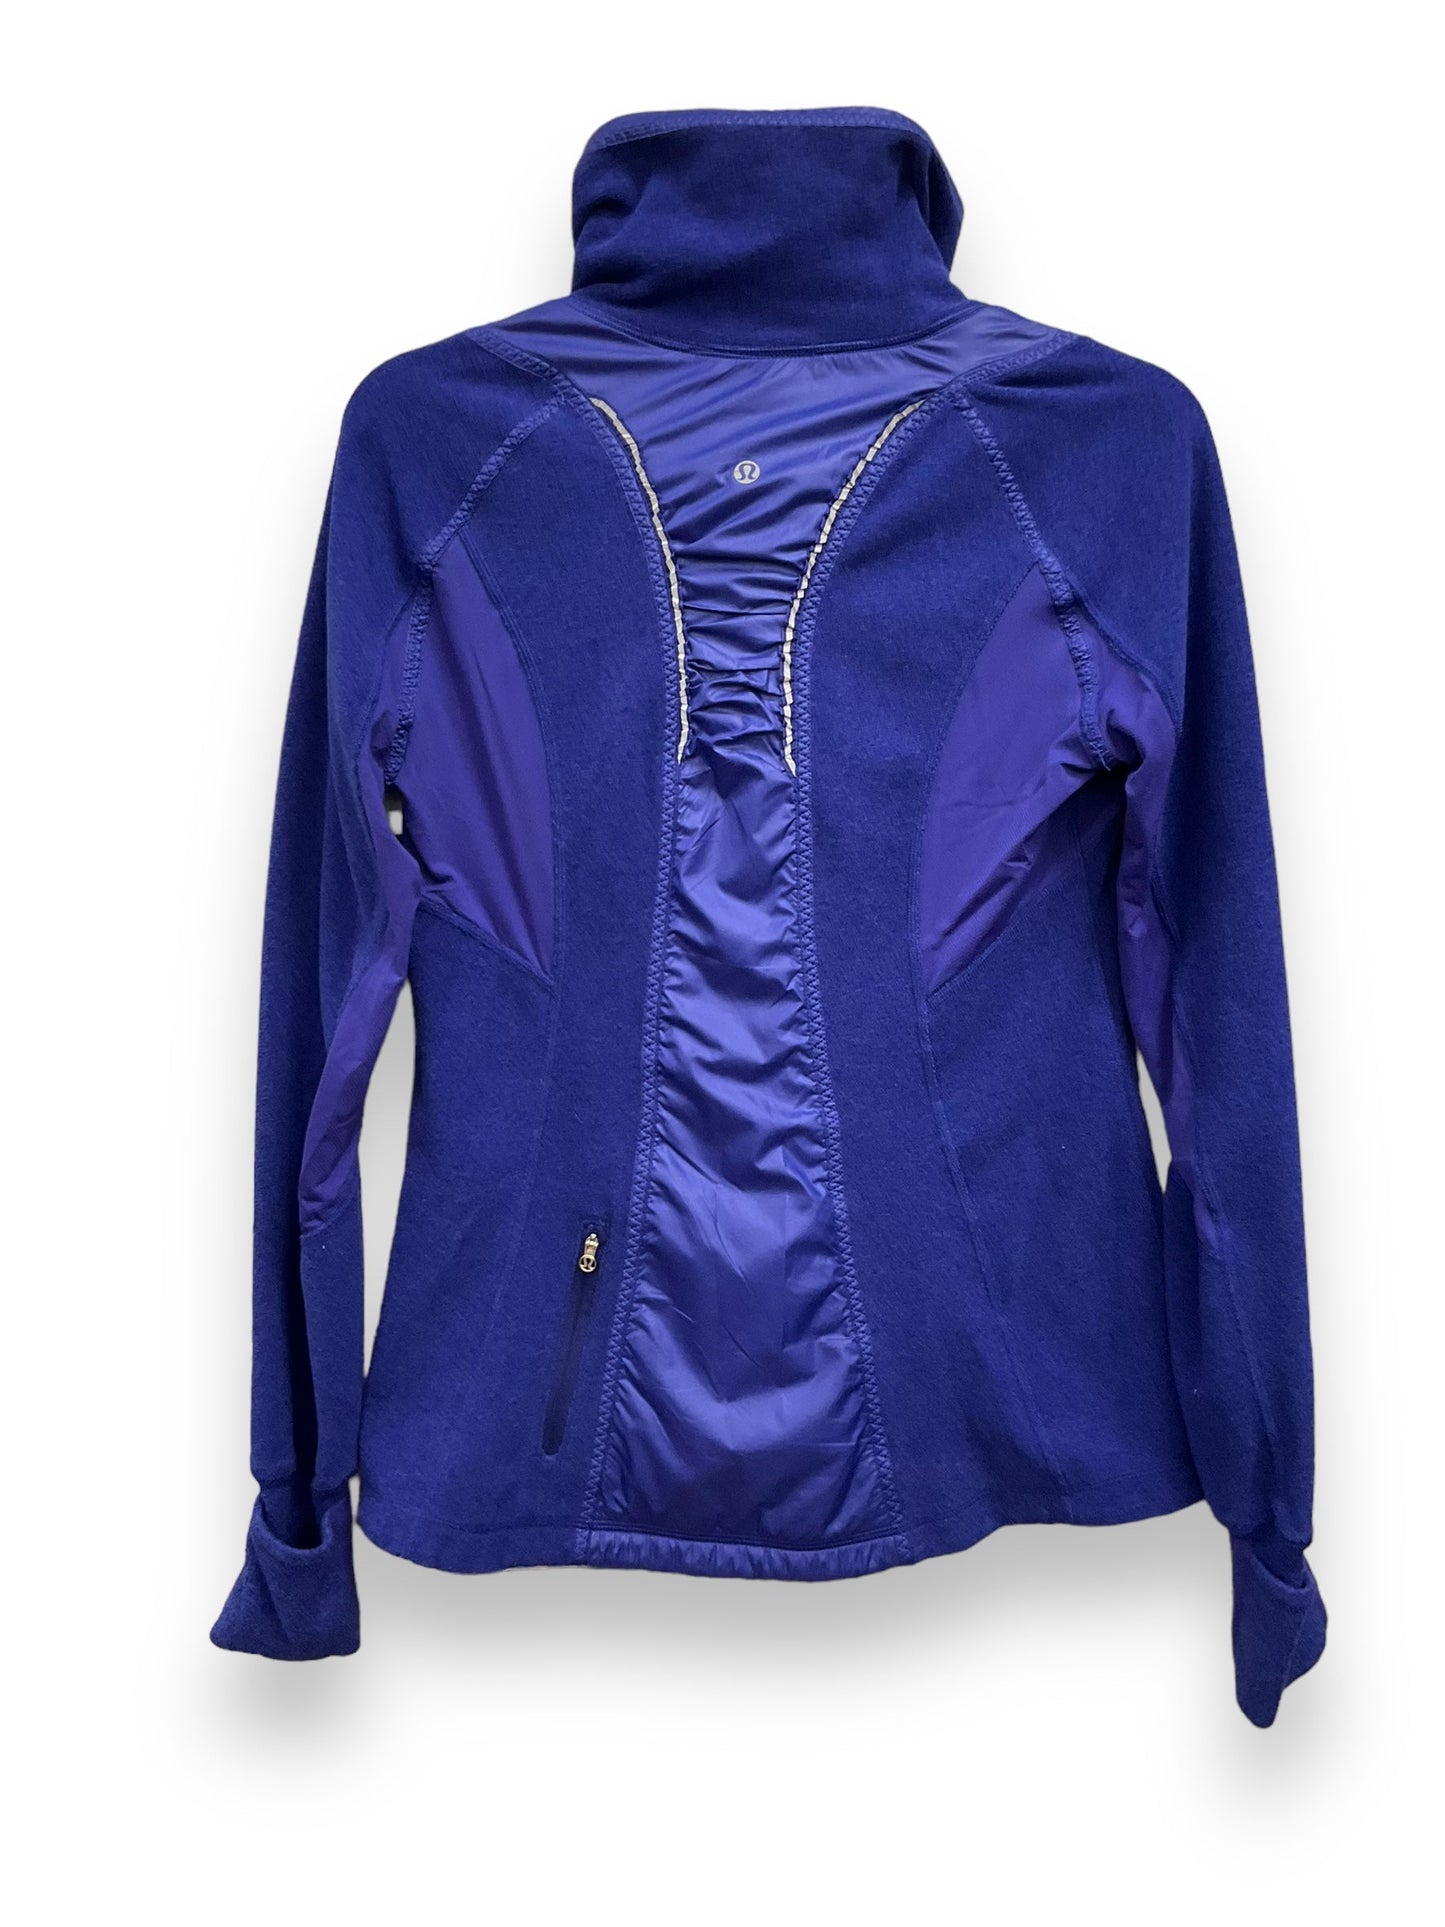 Blue Athletic Jacket Lululemon, Size 6